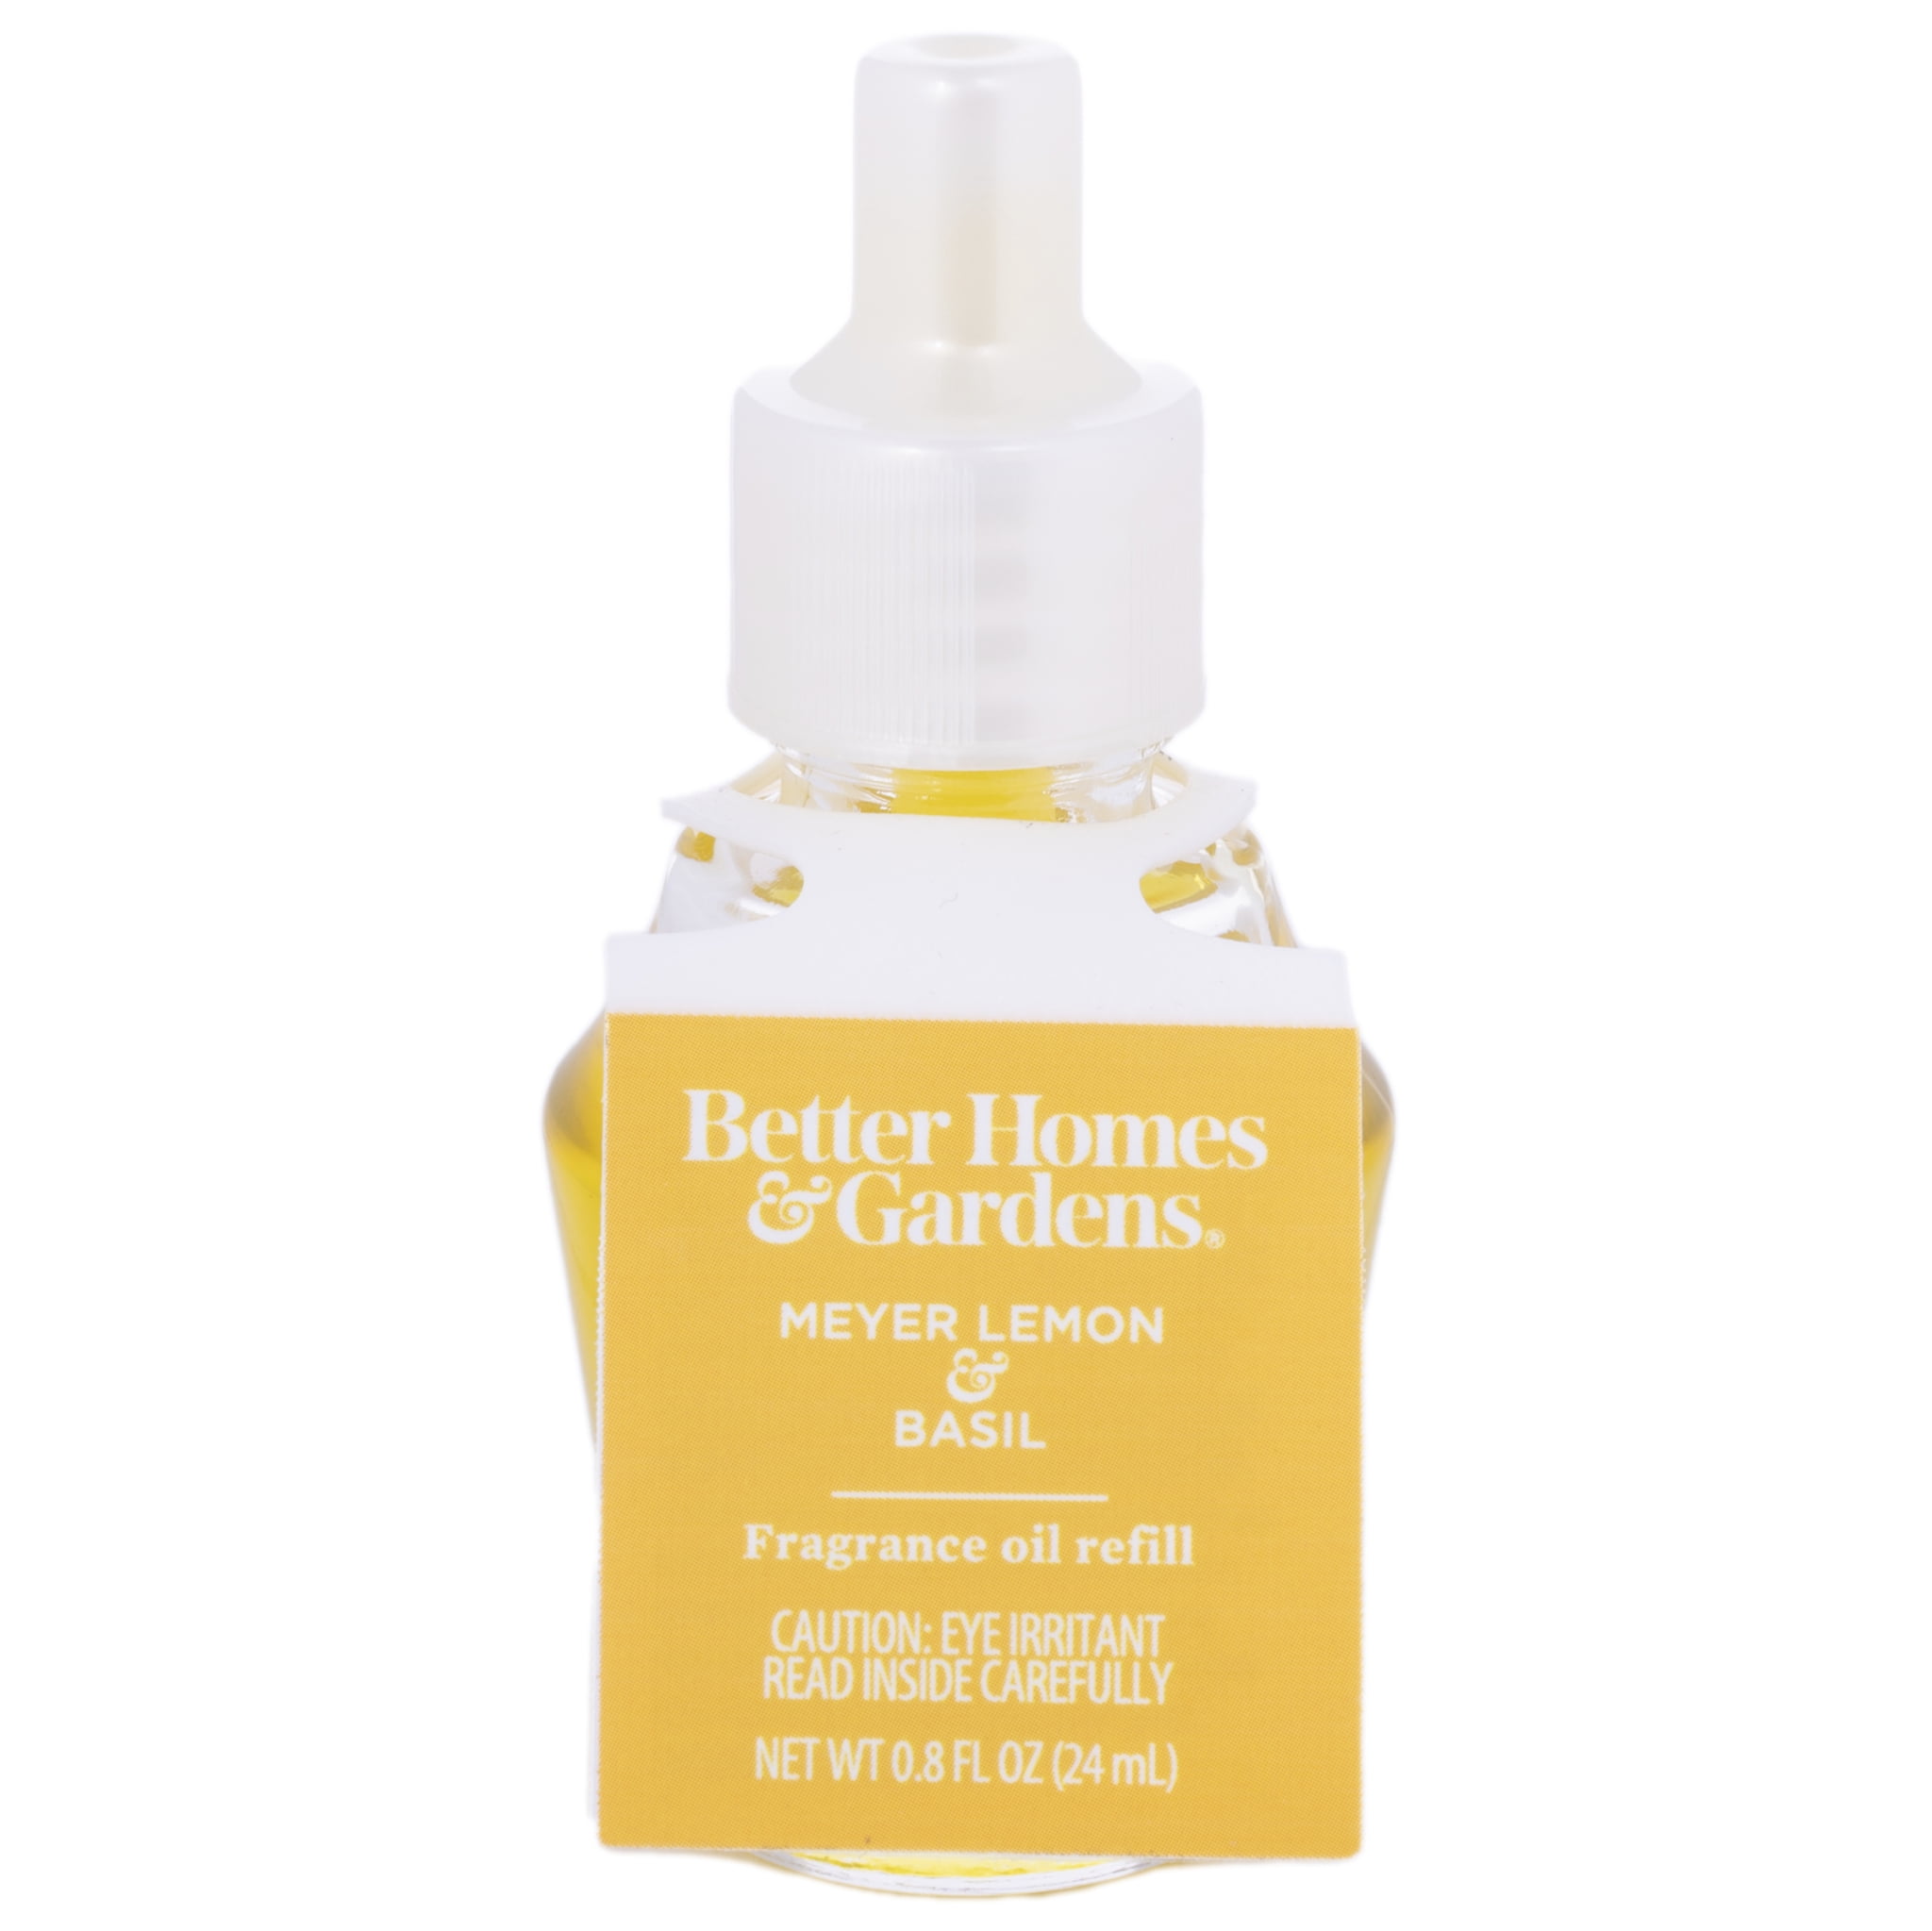 Meyer Lemon Basil Fragrance Oil Refill, Better Homes & Gardens, 24 ml